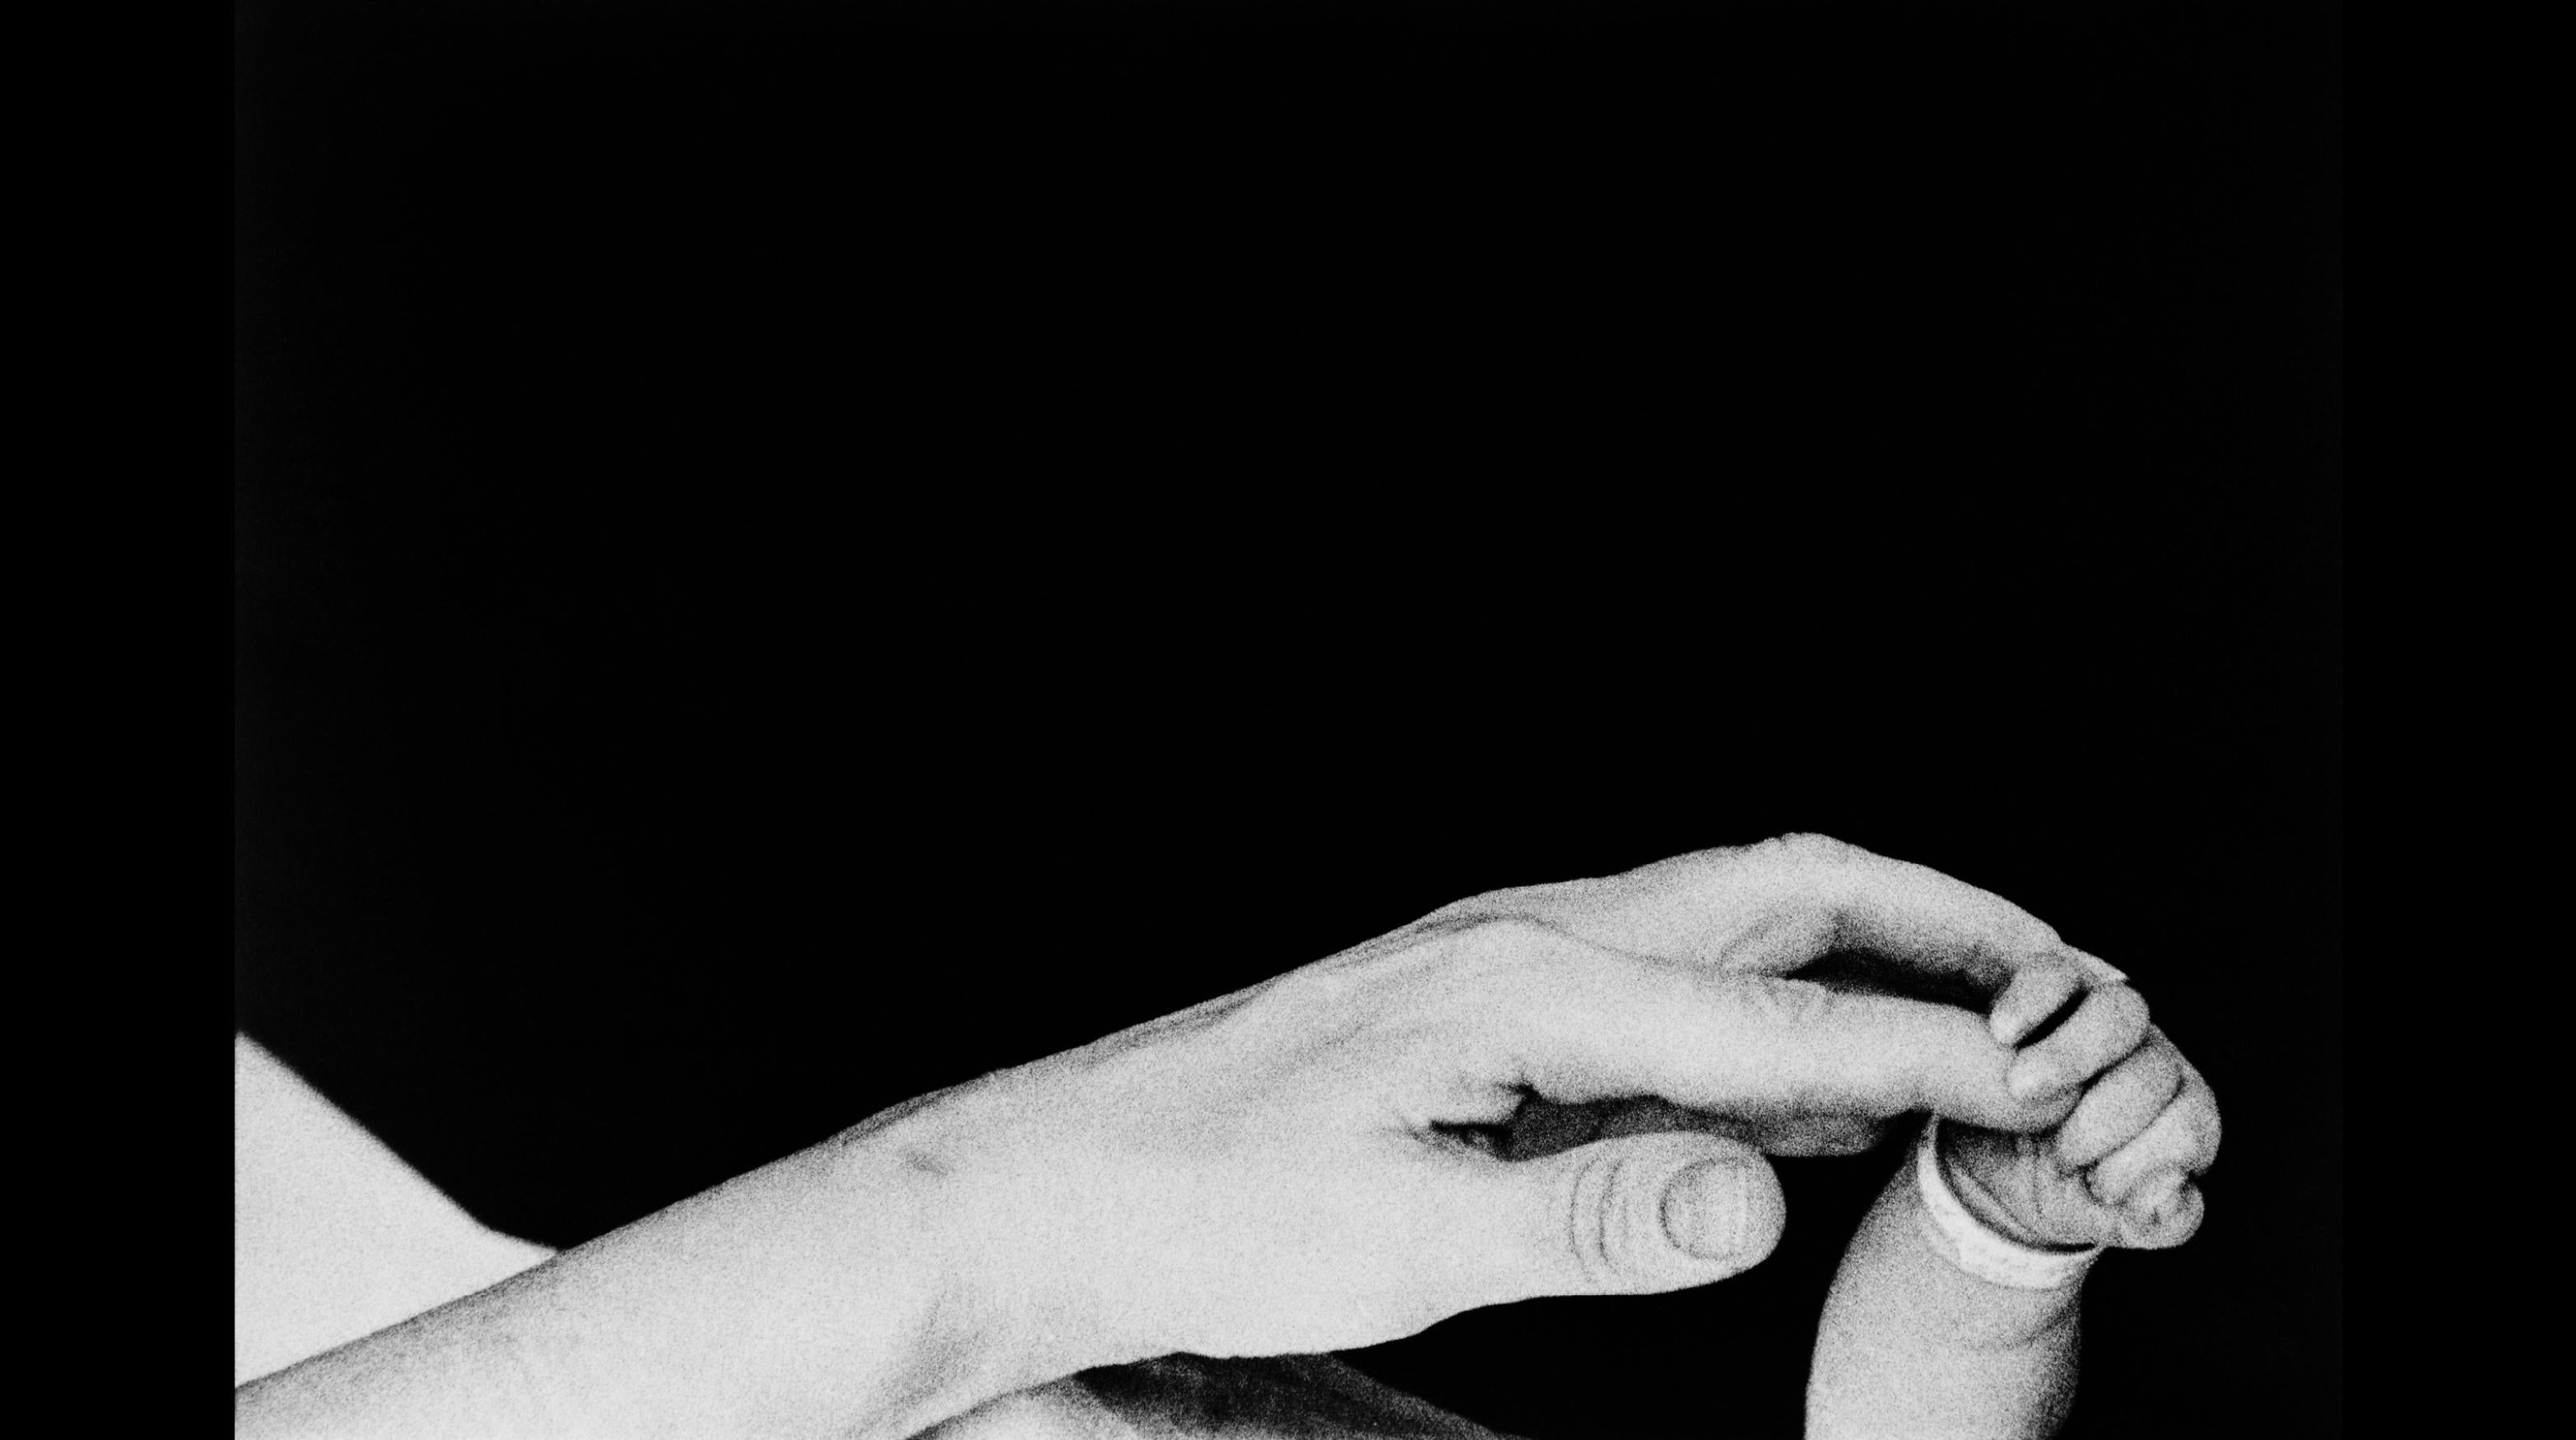 Ein Modell in Harlem, New York City, 1968.

Alle verfügbaren Größen und Ausgaben:
20" x 24", Auflage 25 + 3 Probedrucke
24" x 34", Auflage 25 + 3 Probedrucke

"Eve Arnold, 1912 als Tochter russischer Einwanderer in Philadelphia geboren, begann ihre